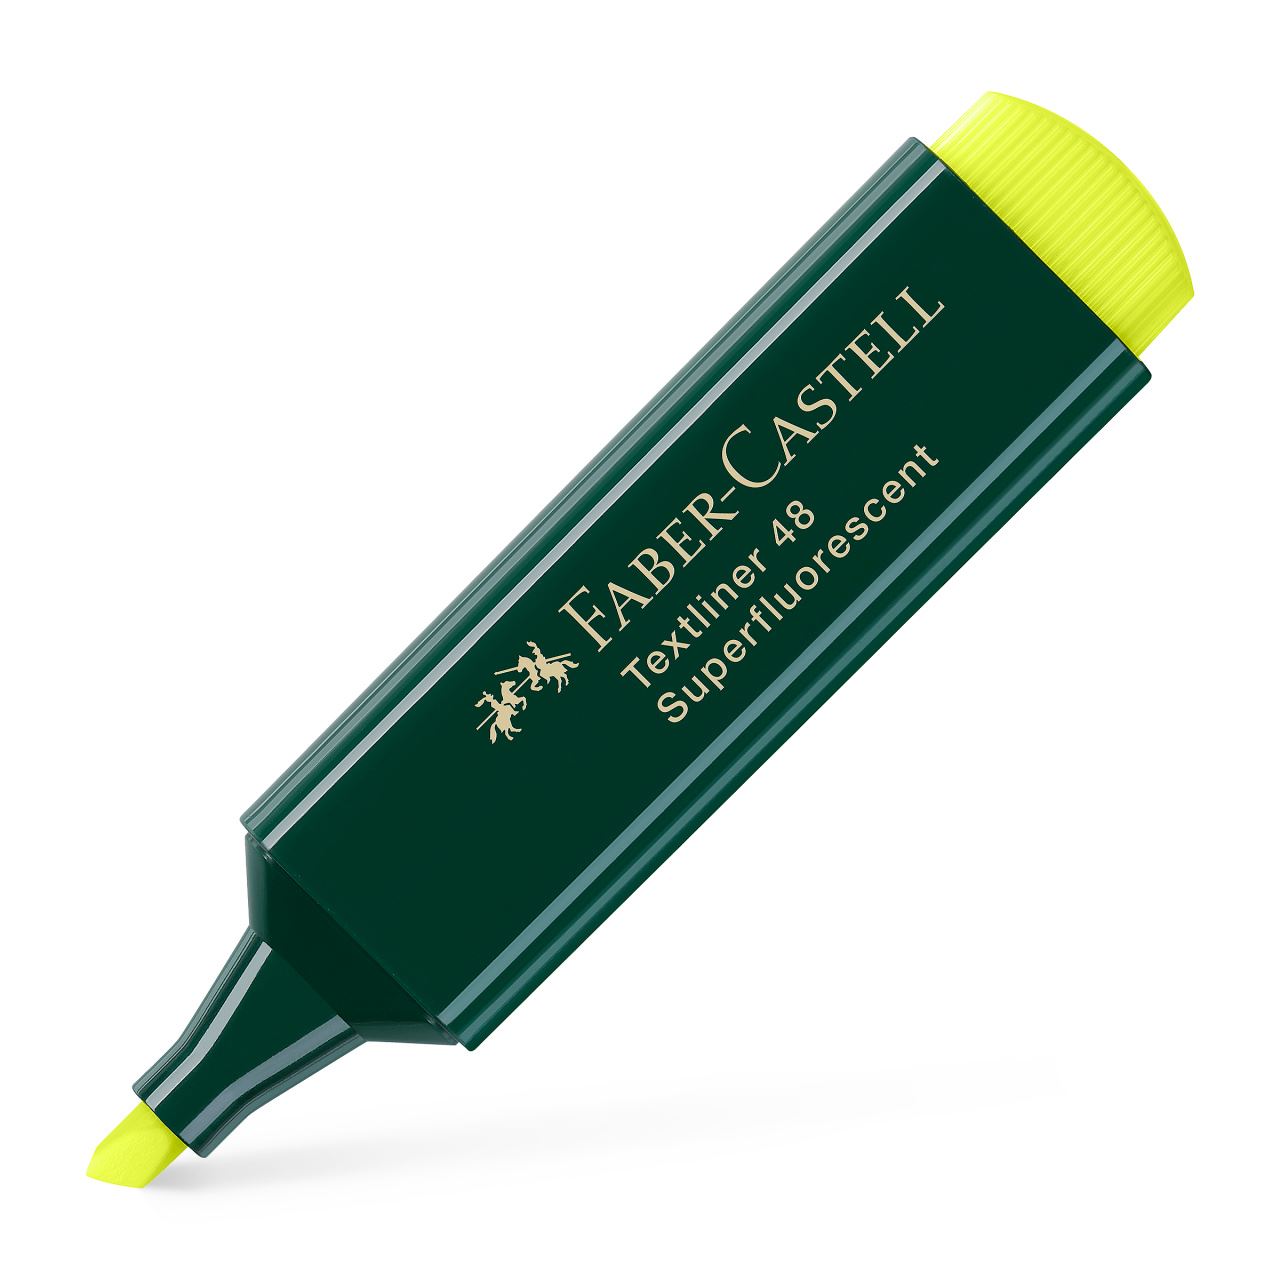 Faber-Castell - Surligneur Textliner 48 jaune